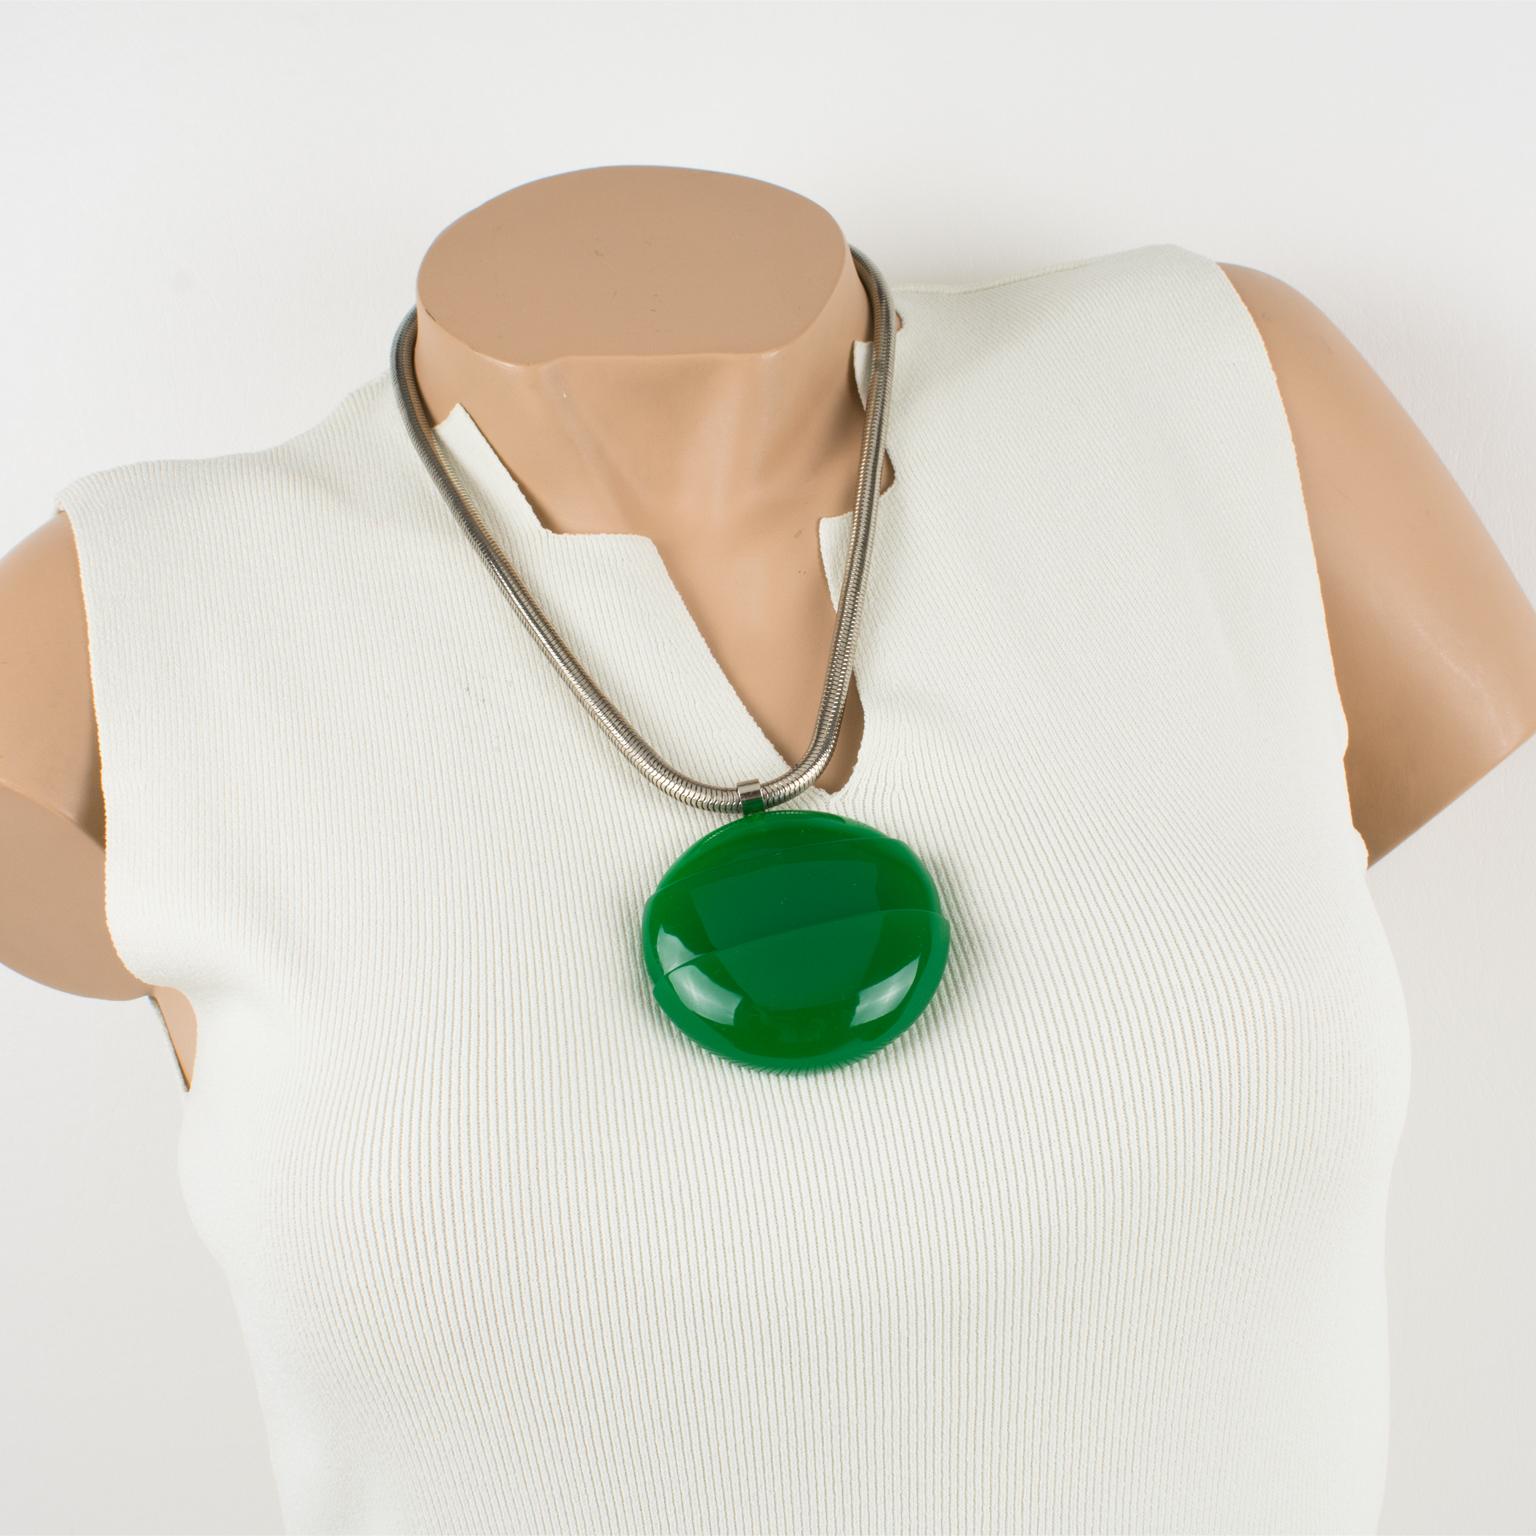 Diese schöne Lanvin Paris modernistischen 1970er Jahre Halskette verfügt über eine übergroße architektonische dimensionalen Lucite Anhänger in einer intensiven smaragdgrünen Farbe. Die Halskette hat noch ihre ursprüngliche versilberte